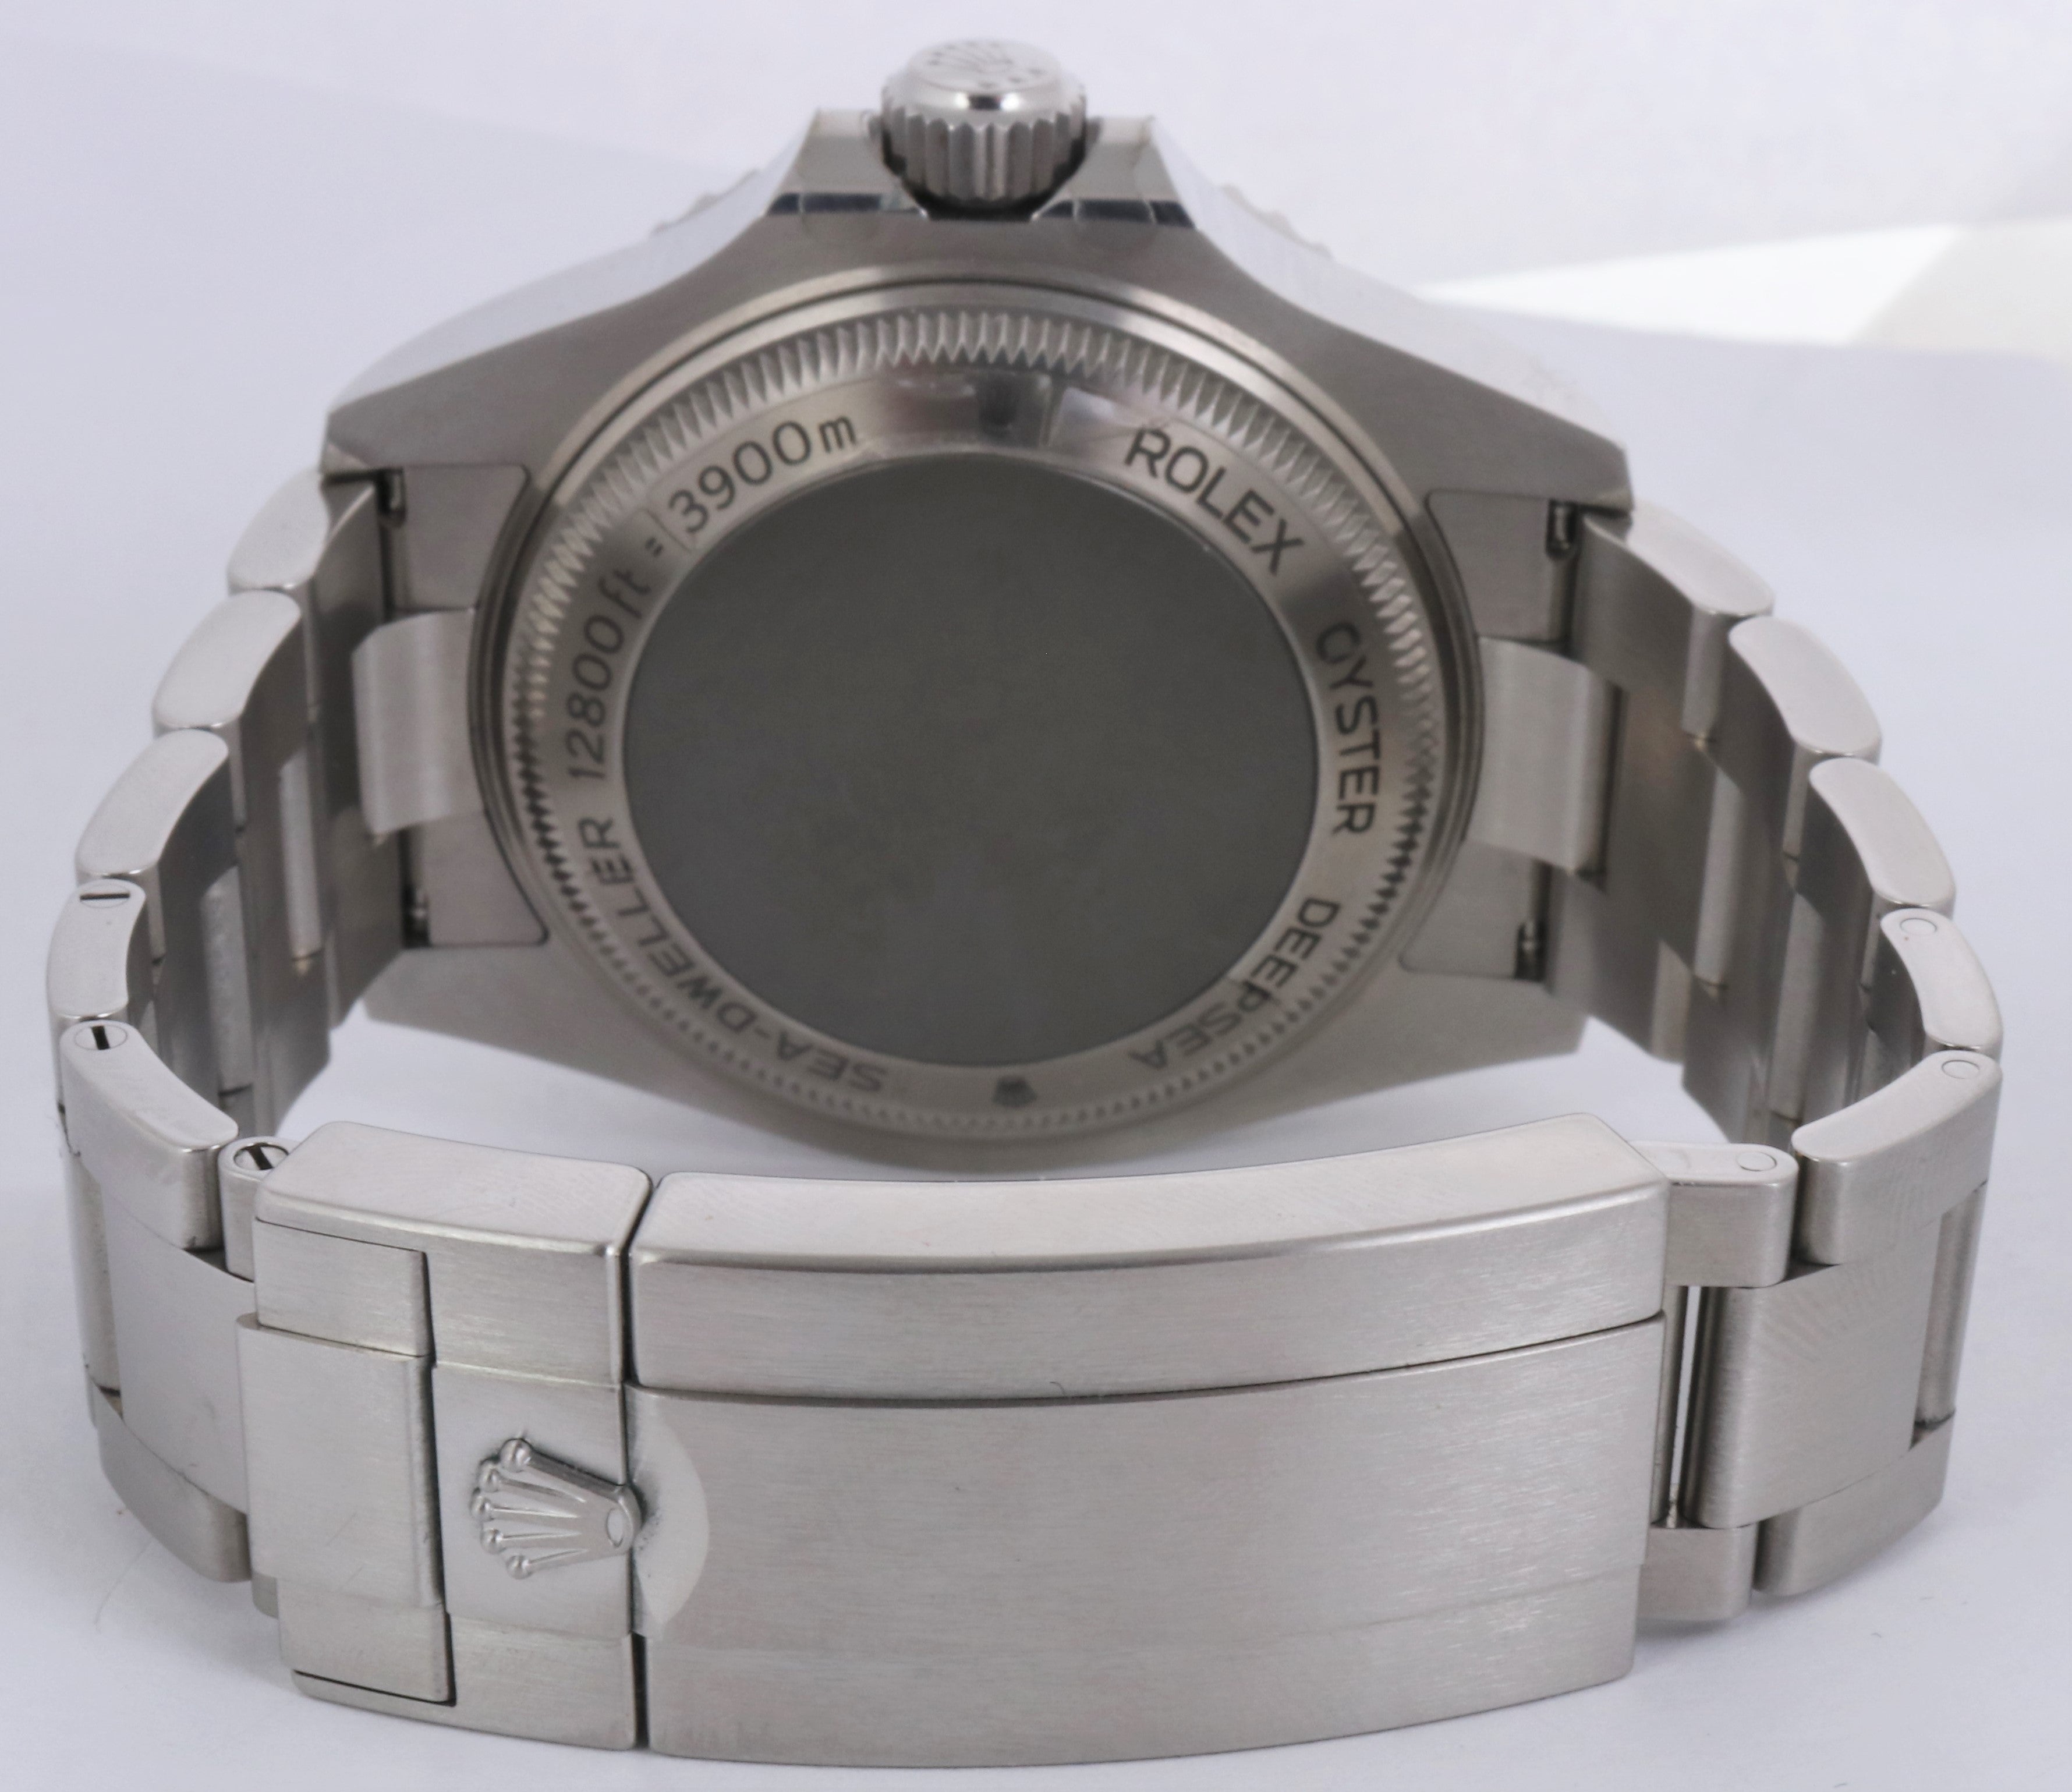 MINT 2018 Rolex Sea-Dweller Deepsea 126660 Stainless Steel 44mm Black Dive Watch